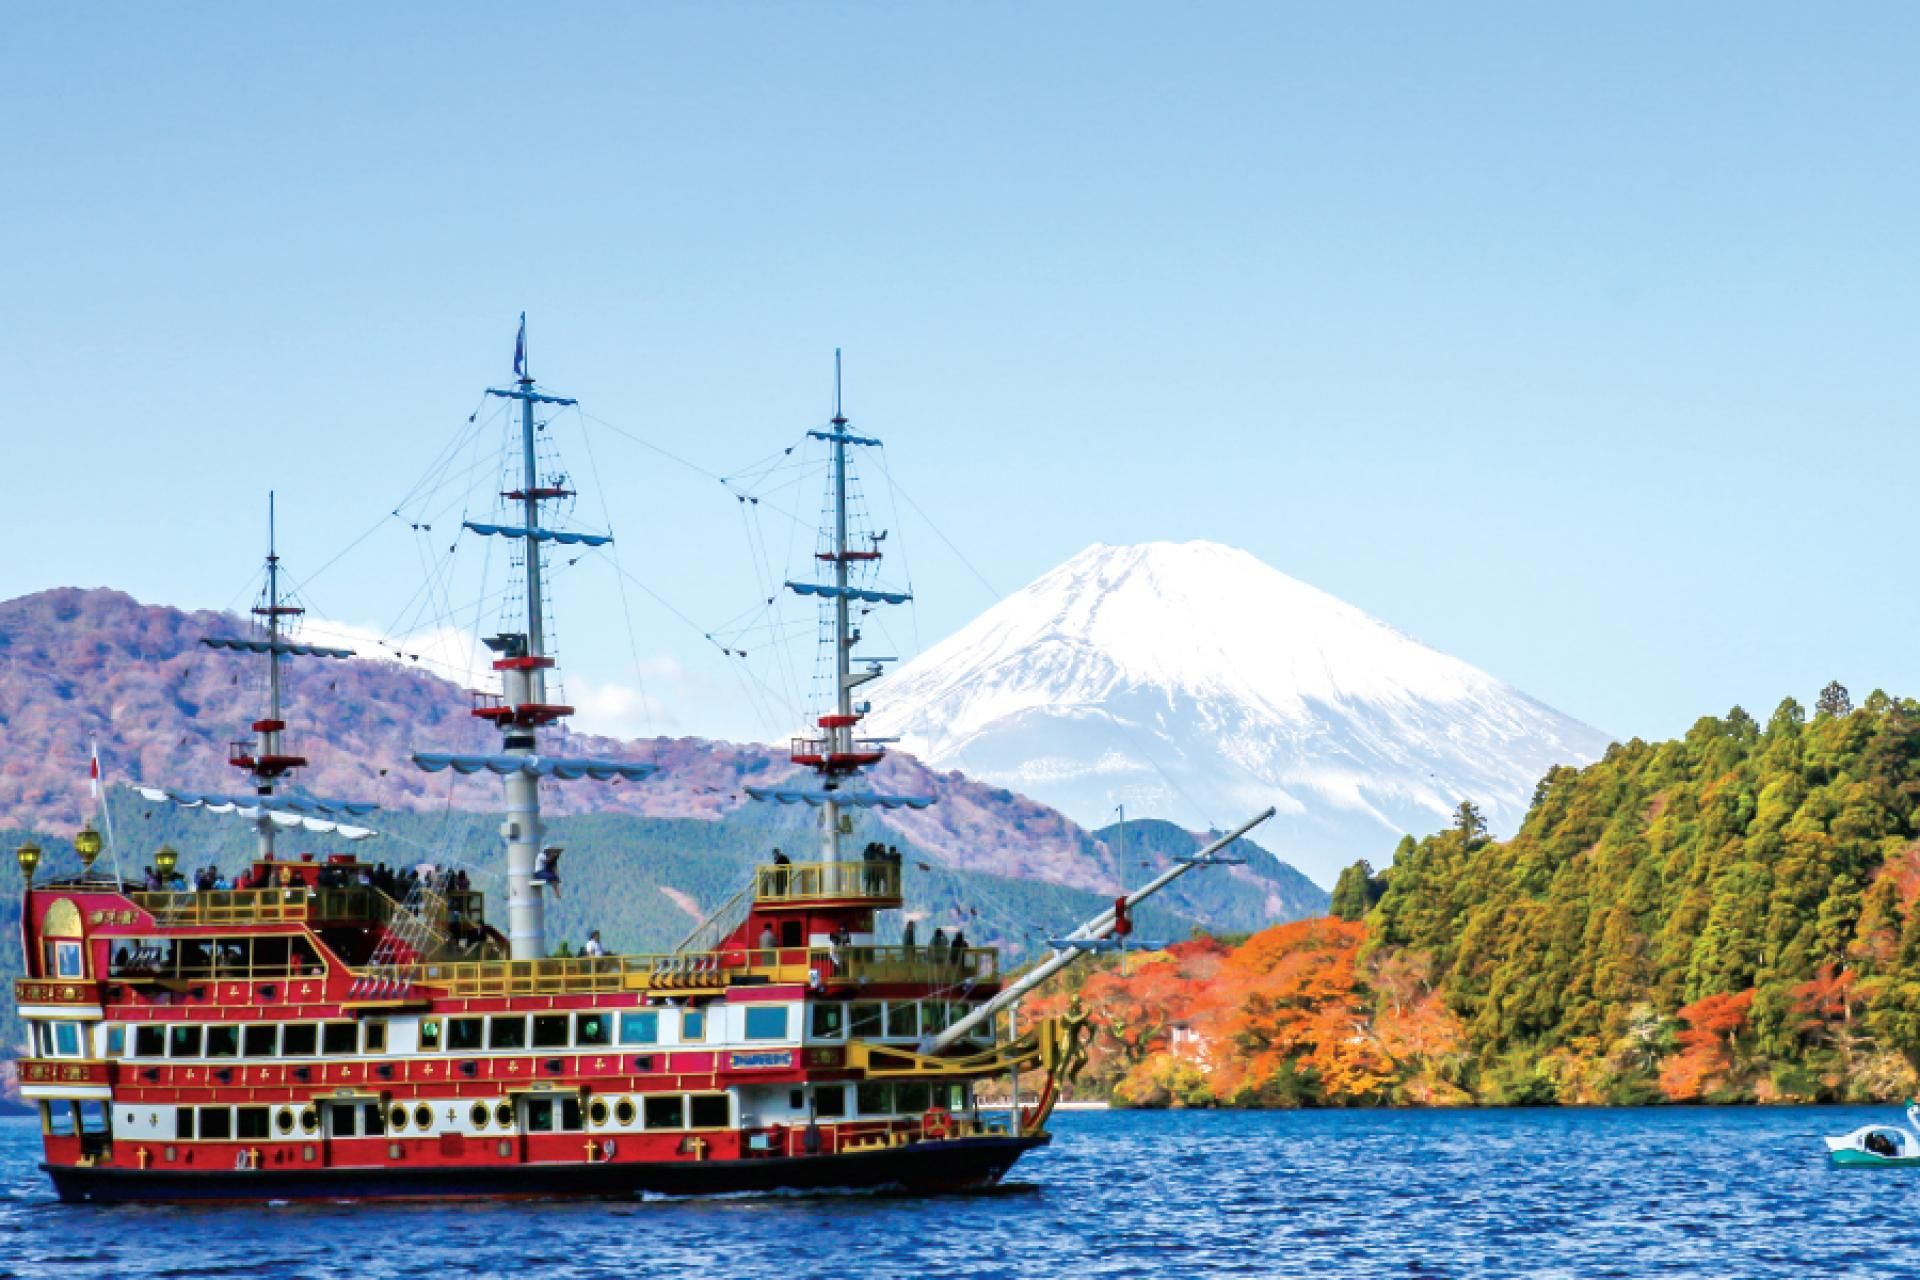 Hakone Jepang, Tempat Wisata Menarik dari Fuji hingga Onsen